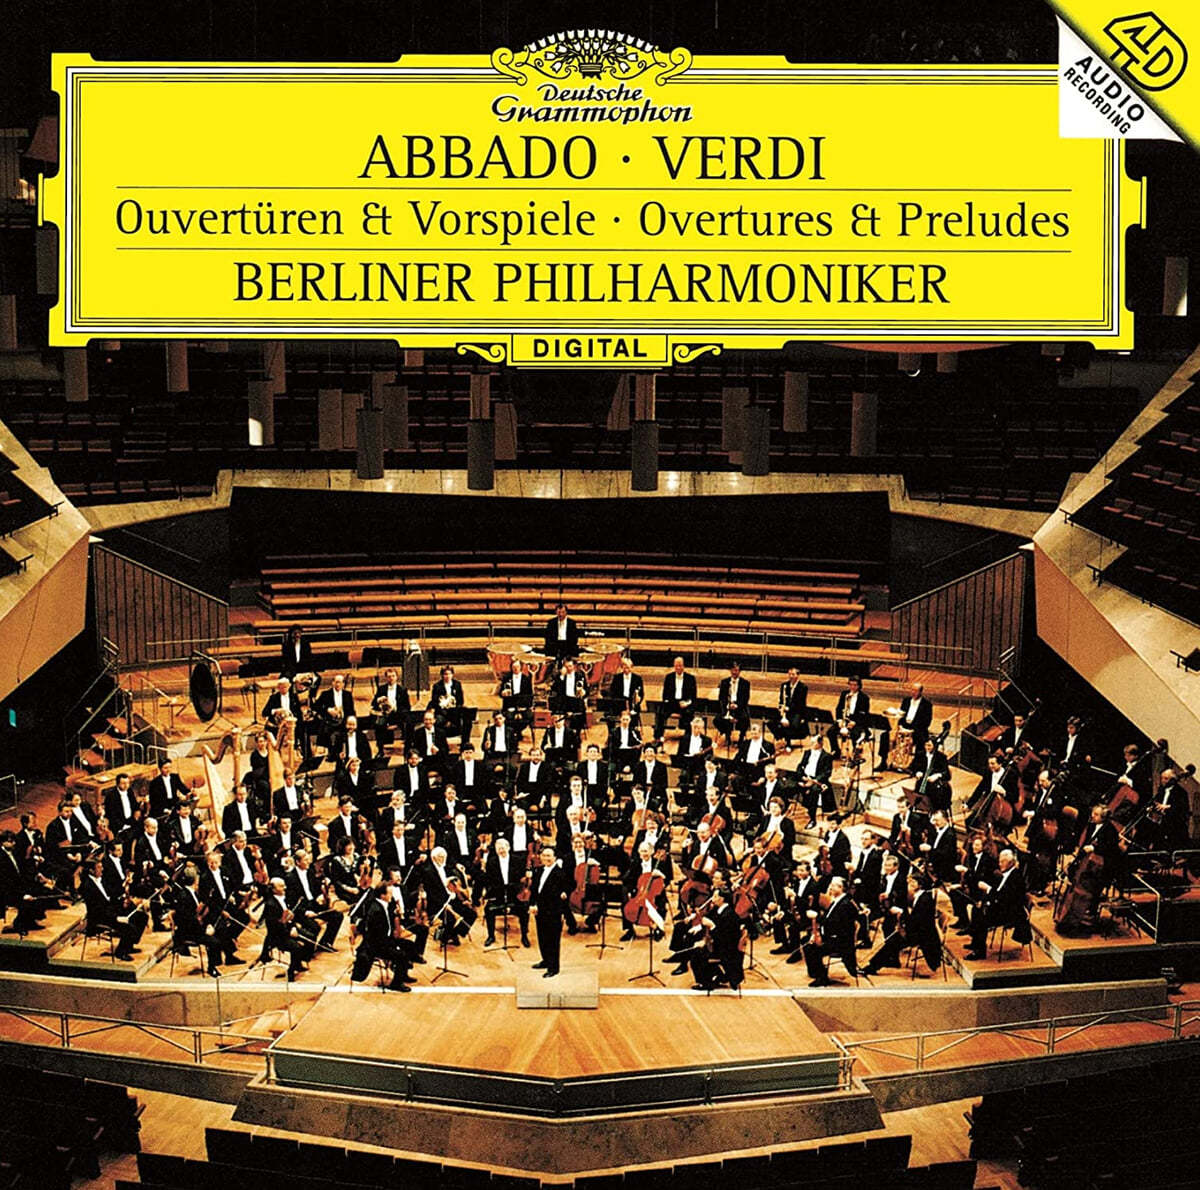 Claudio Abbado 베르디: 서곡과 전주곡 (Verdi: Overtures & Preludes)